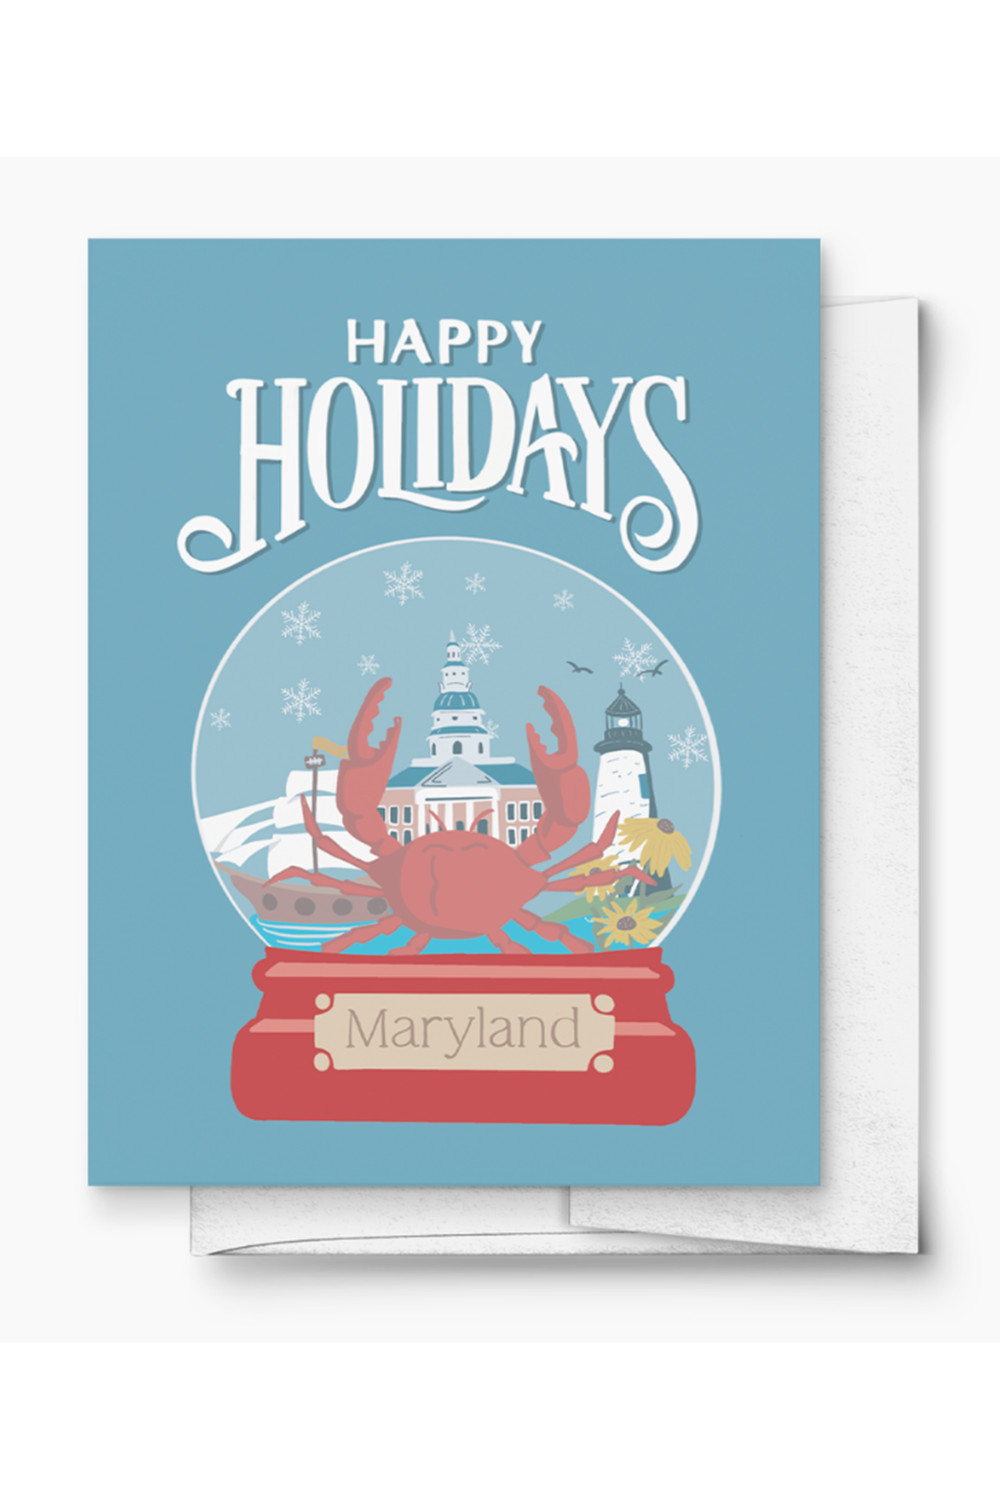 PC Holiday Card - Happy Holidays from Maryland Snow Globe